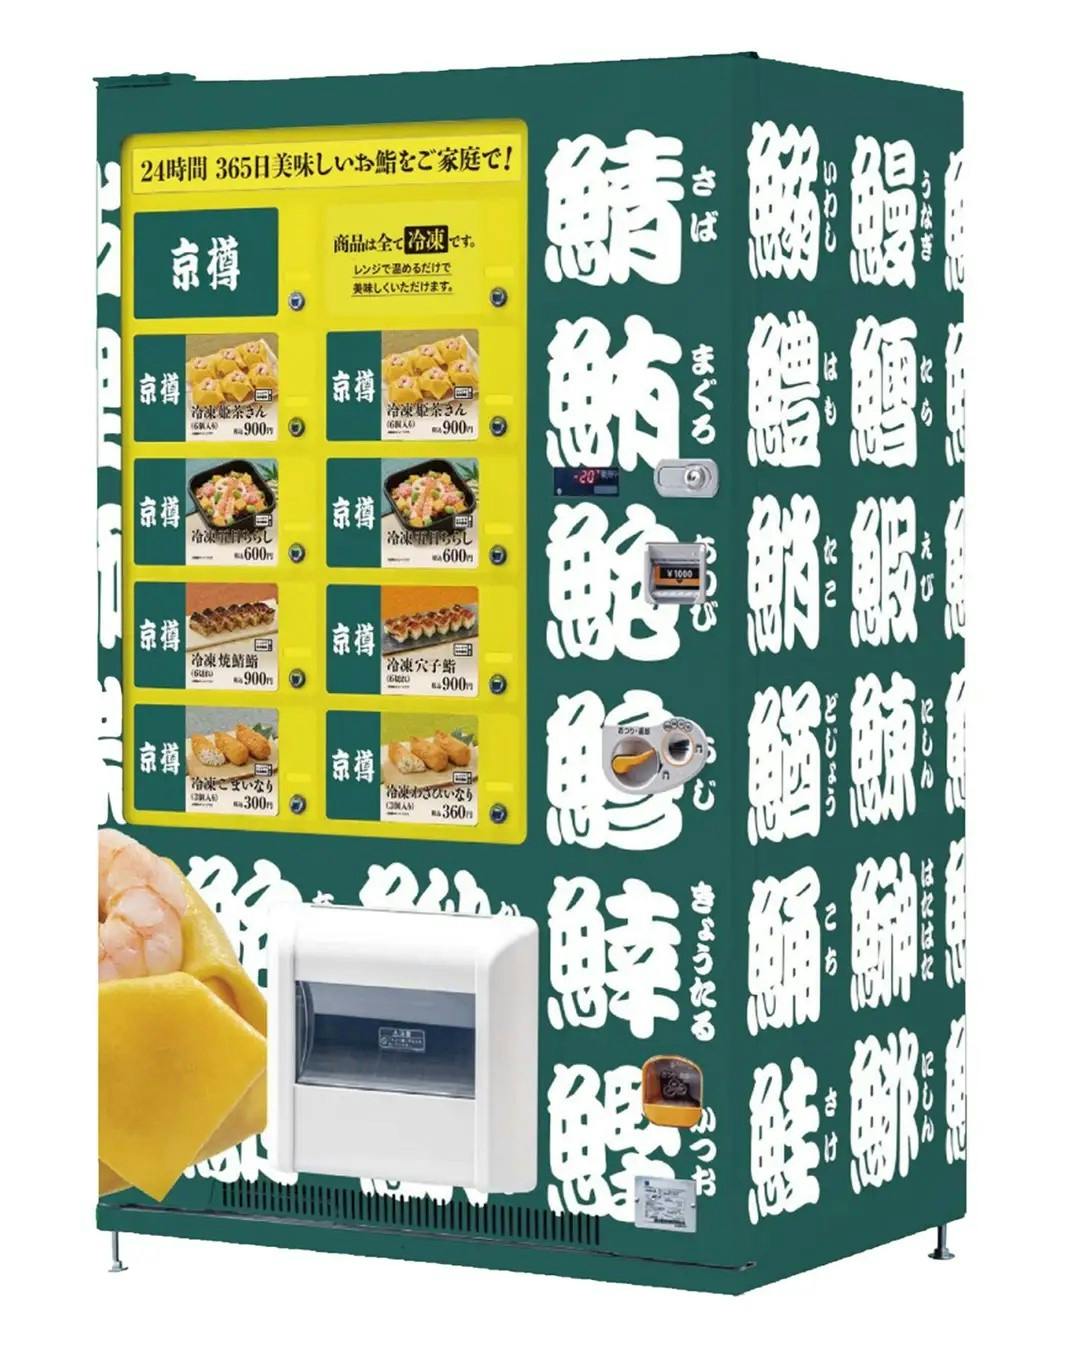 京樽の寿司を販売する冷凍自動販売機